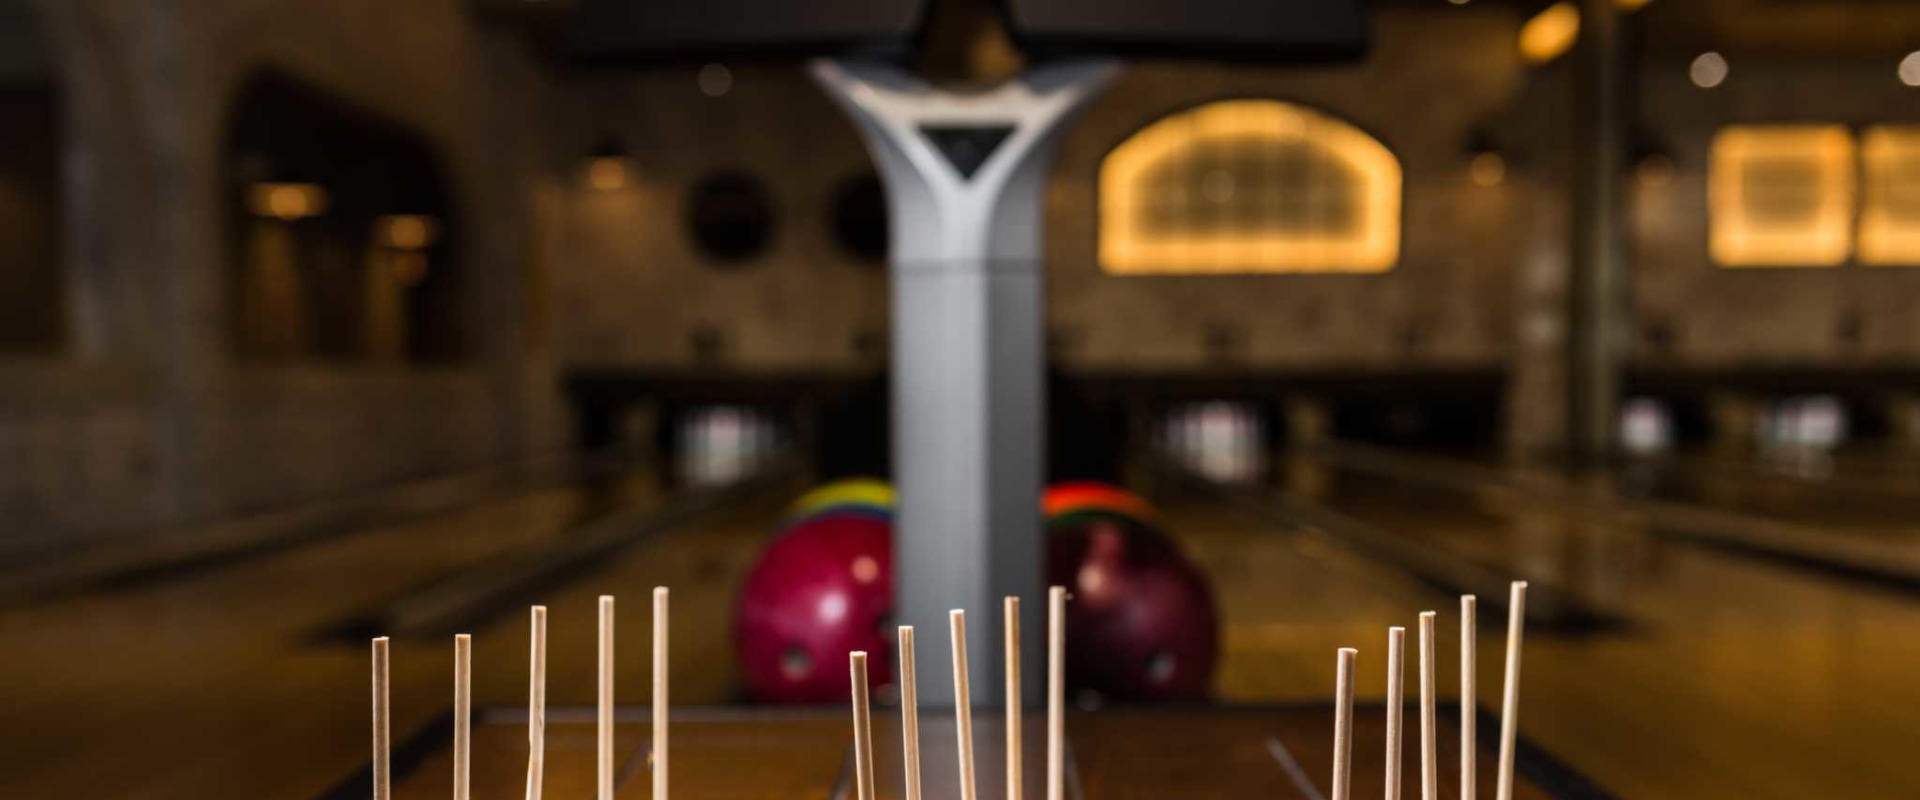 Bowling at Bowl & Barrel: An Engaging and Informative Look at San Antonio's Indoor Activities